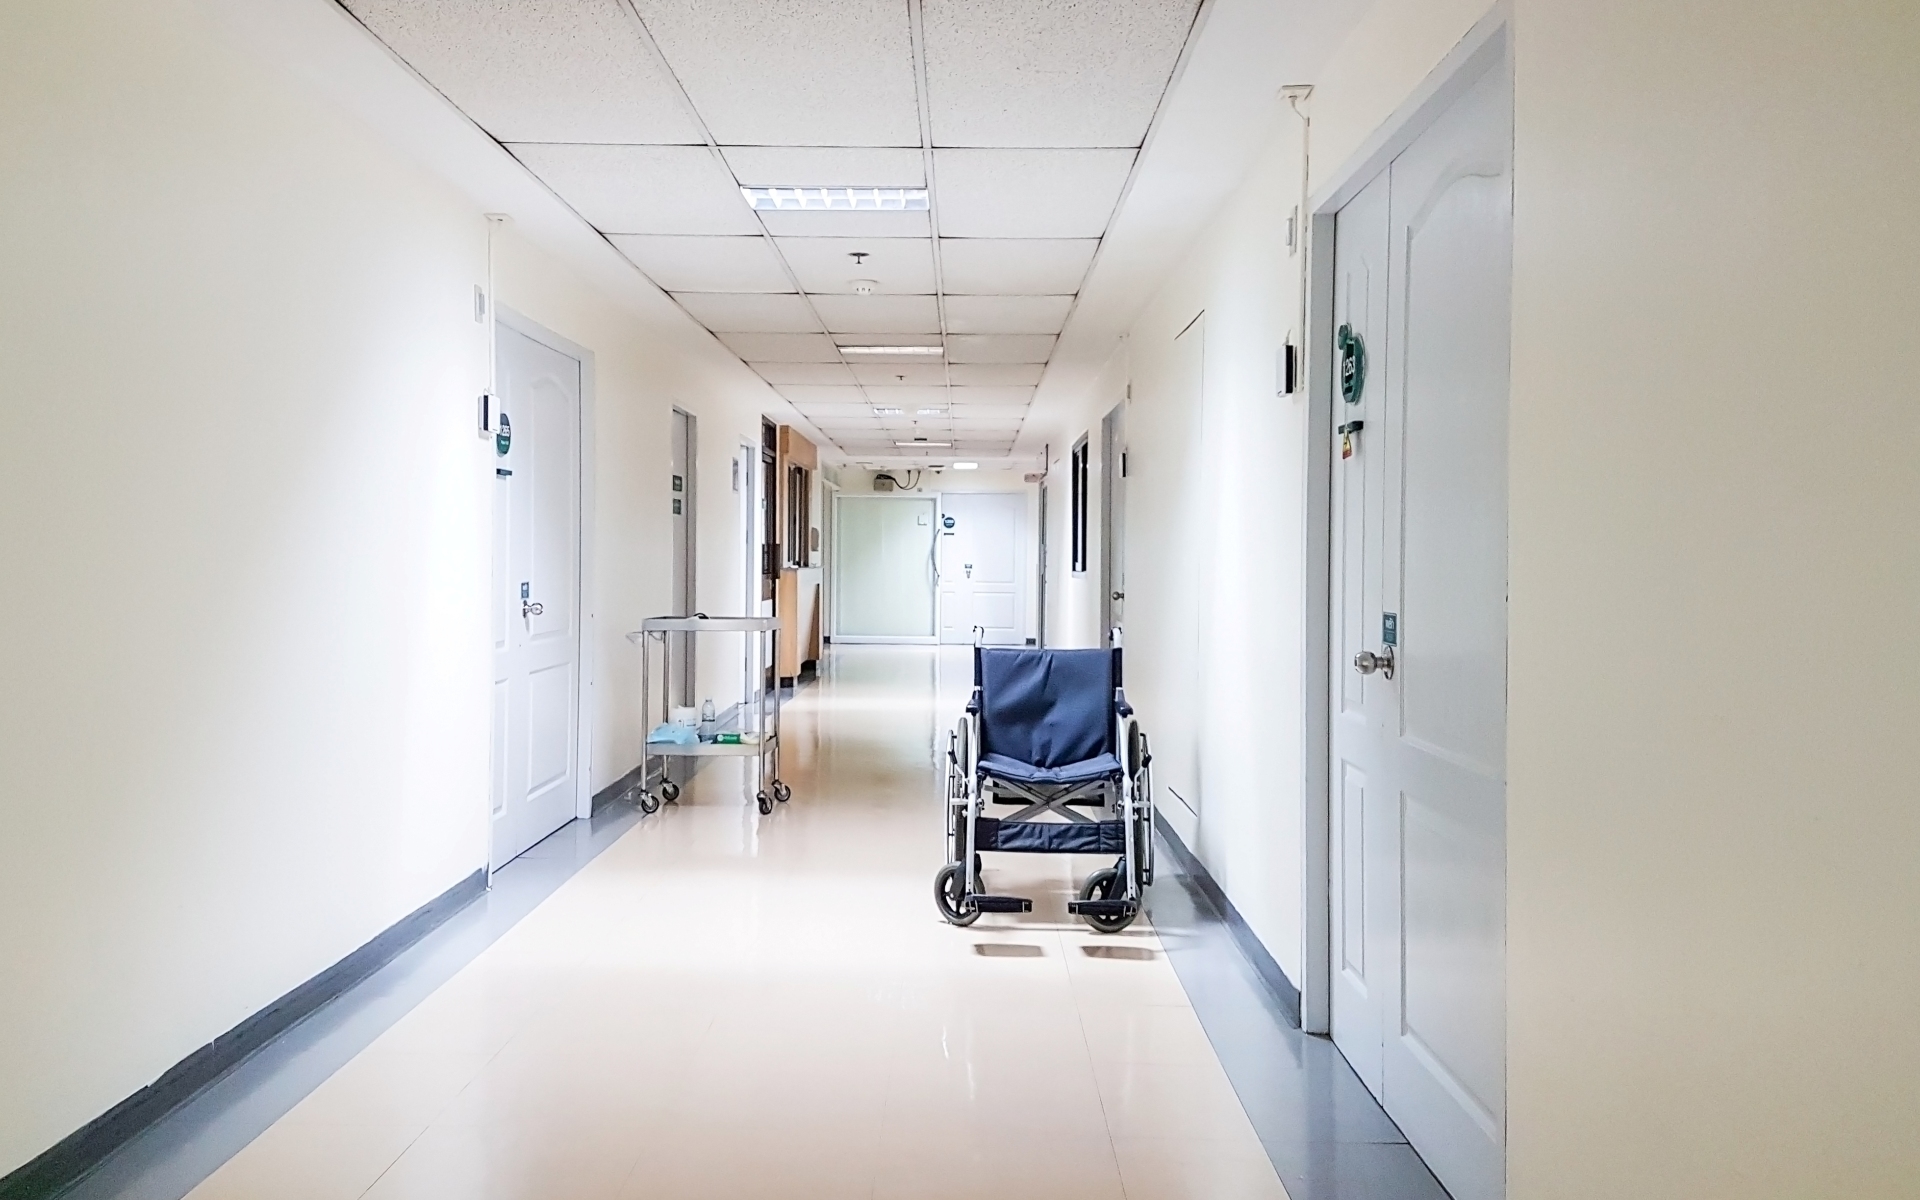 ΙΟΒΕ ασφαλιστικές: Αύξηση 10,9% στις νοσοκομειακές αποζημιώσεις το 2019